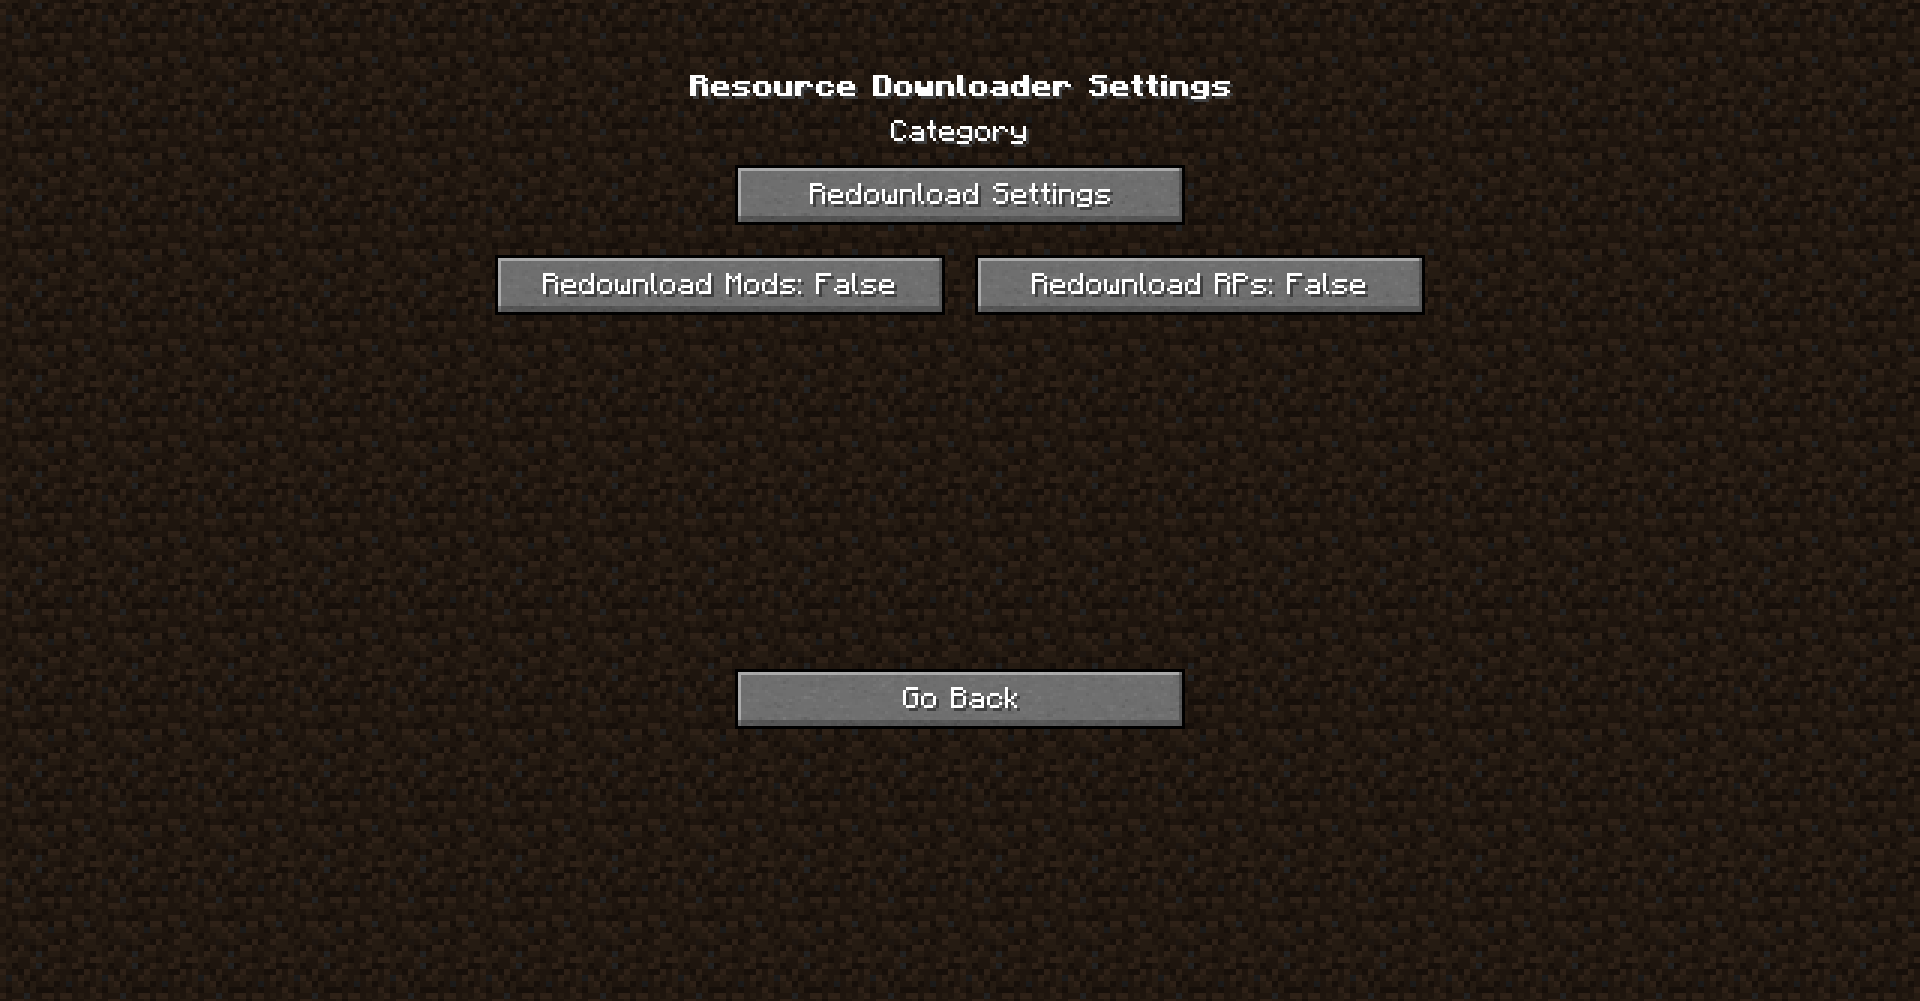 Resource Downloader Settings - Redownload Settings